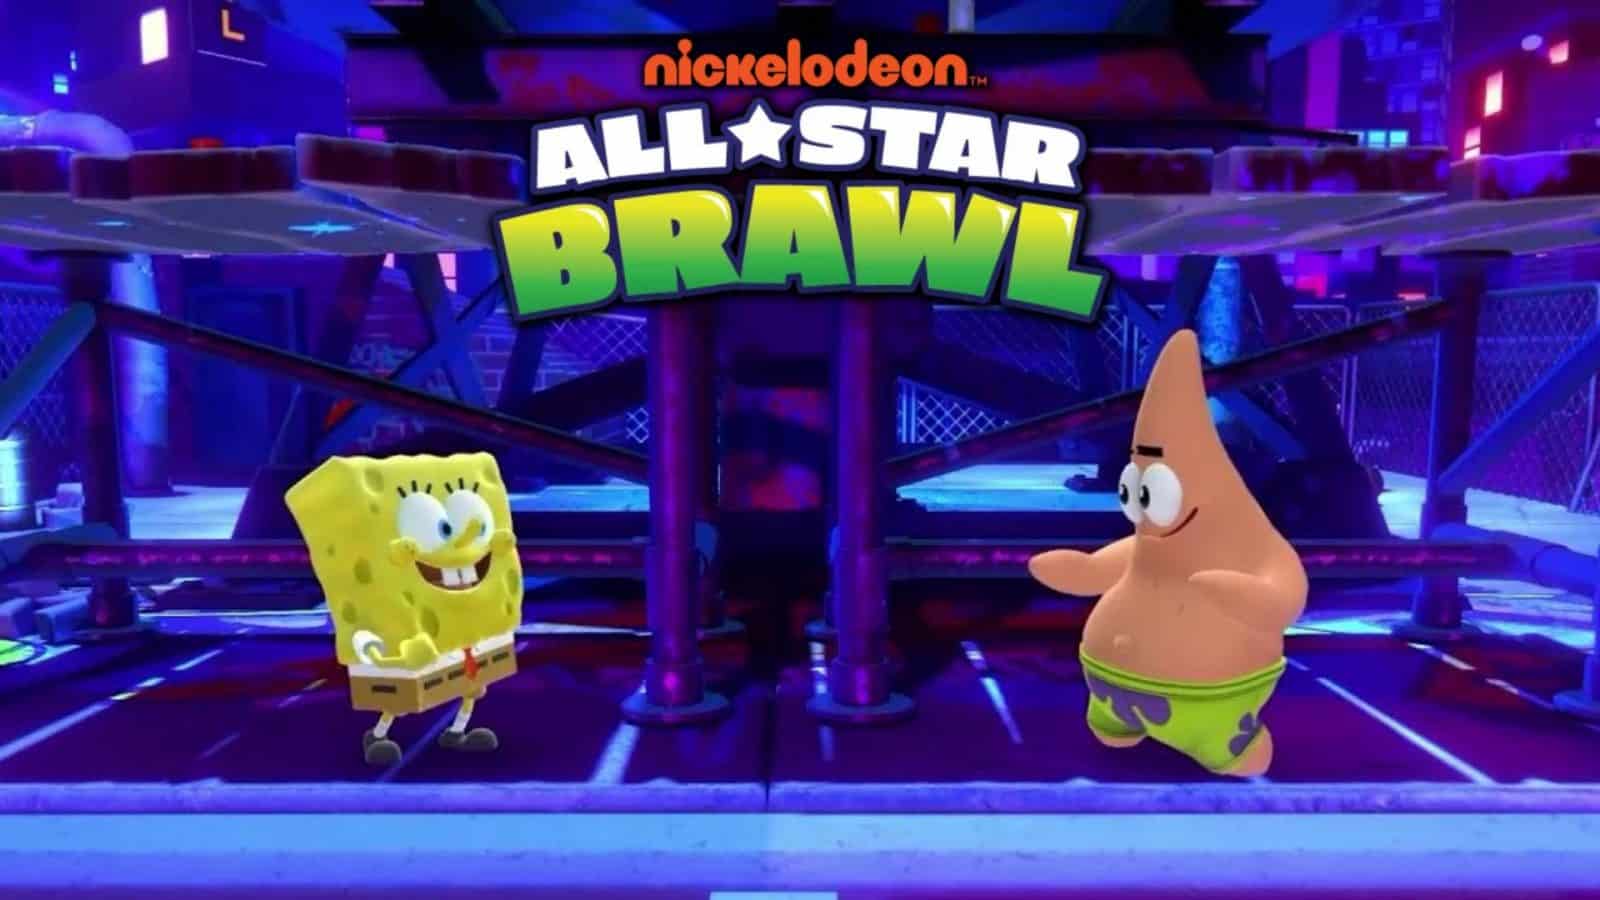 Nickelodeon All Star Brawl Jilayaasha Cusub E1652194625771